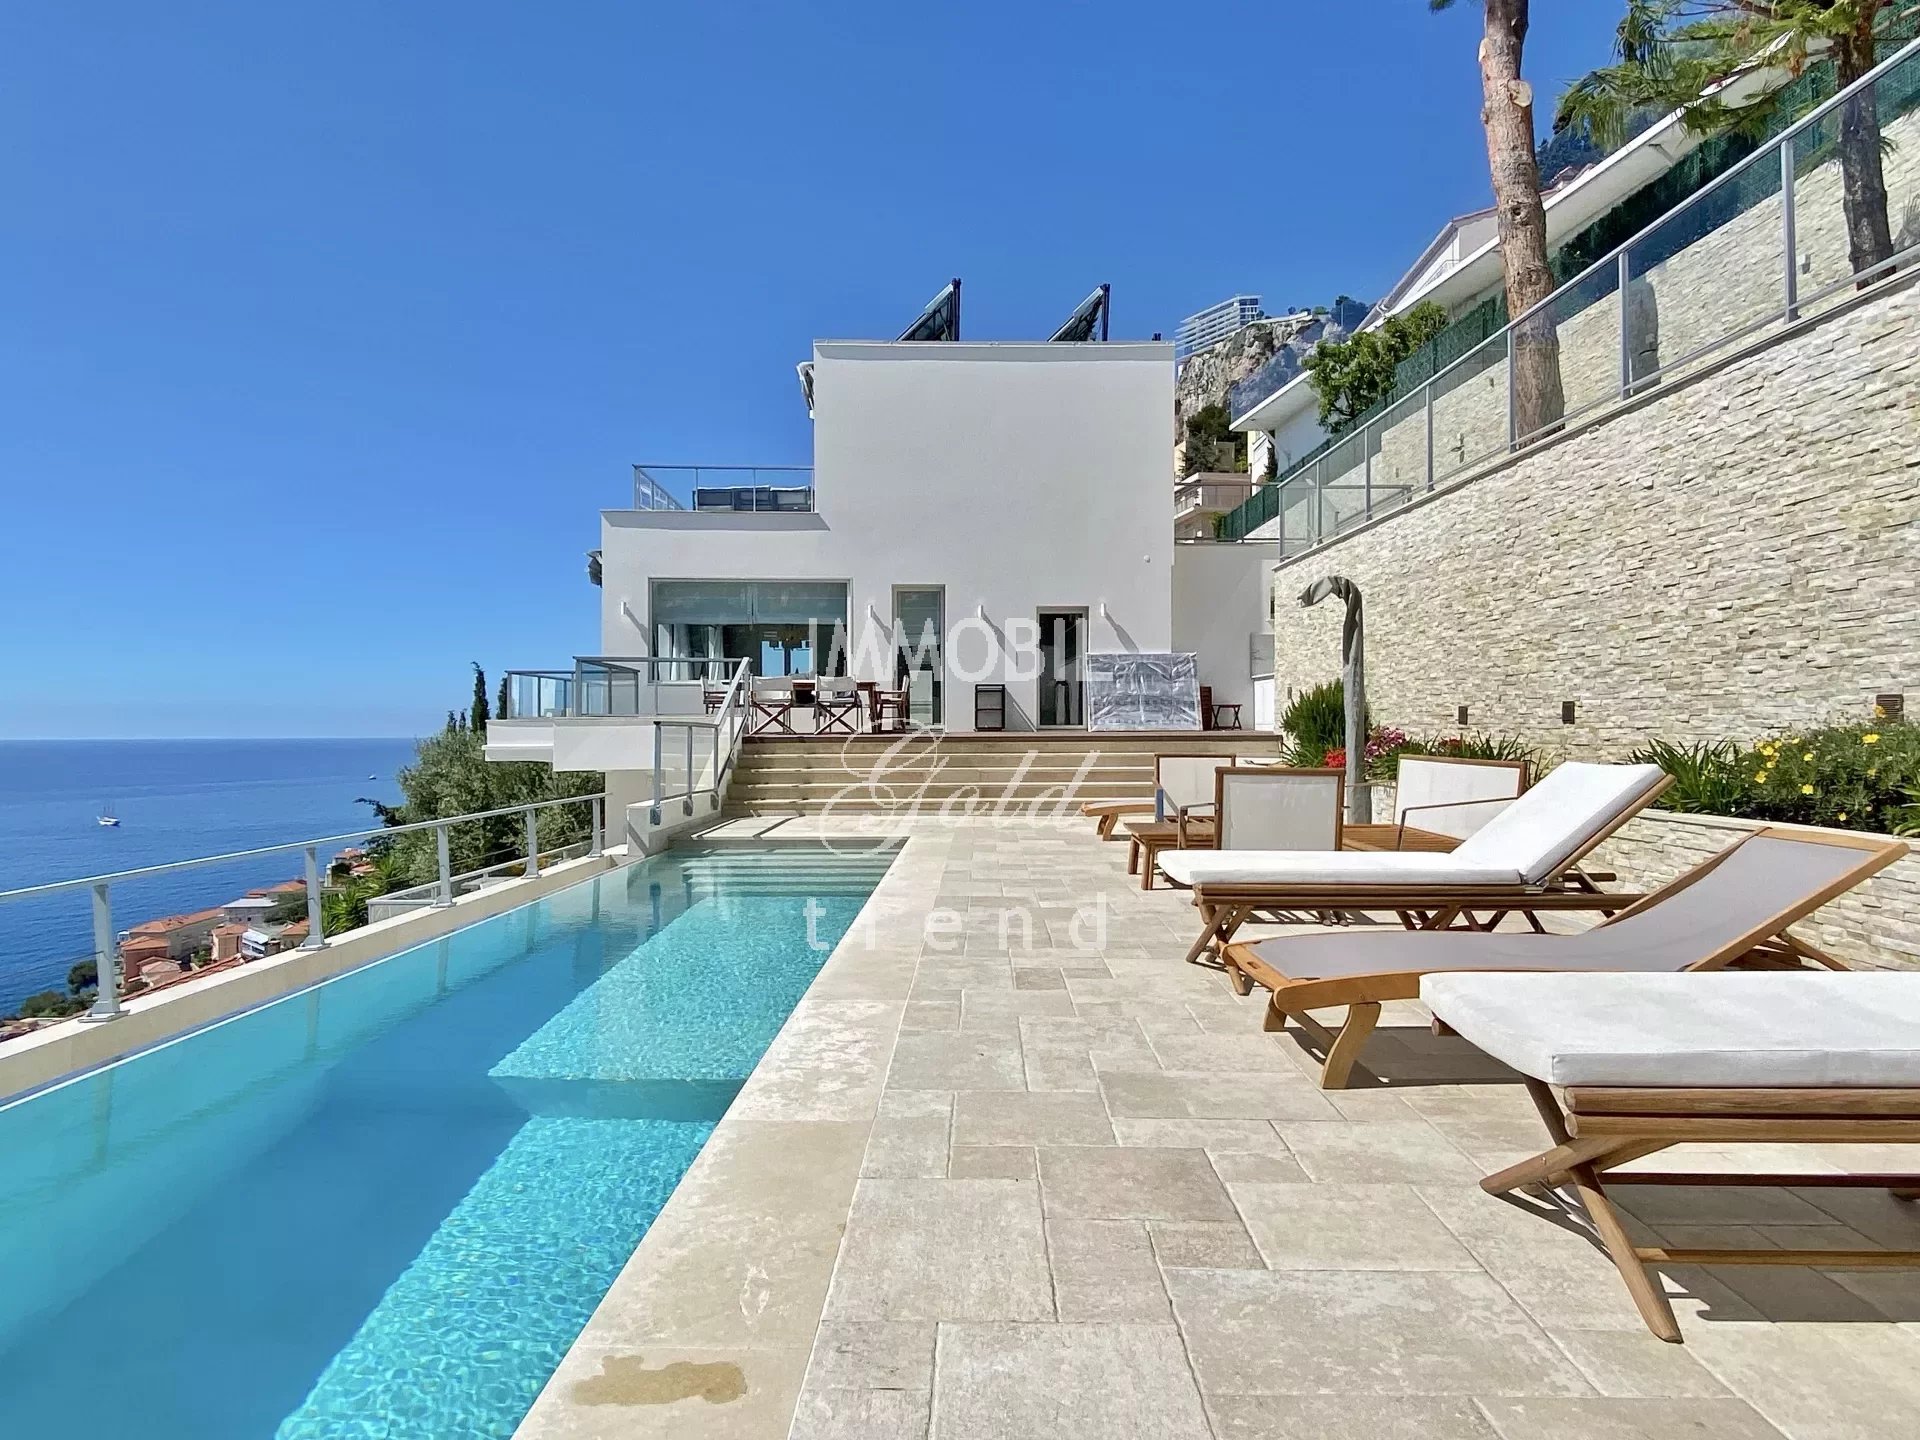 Недвижимость Roquebrune Cap Martin - На продажу, вилла, состоящая из четырех квартир, с бассейном и панорамным видом на море, недалеко от Монако